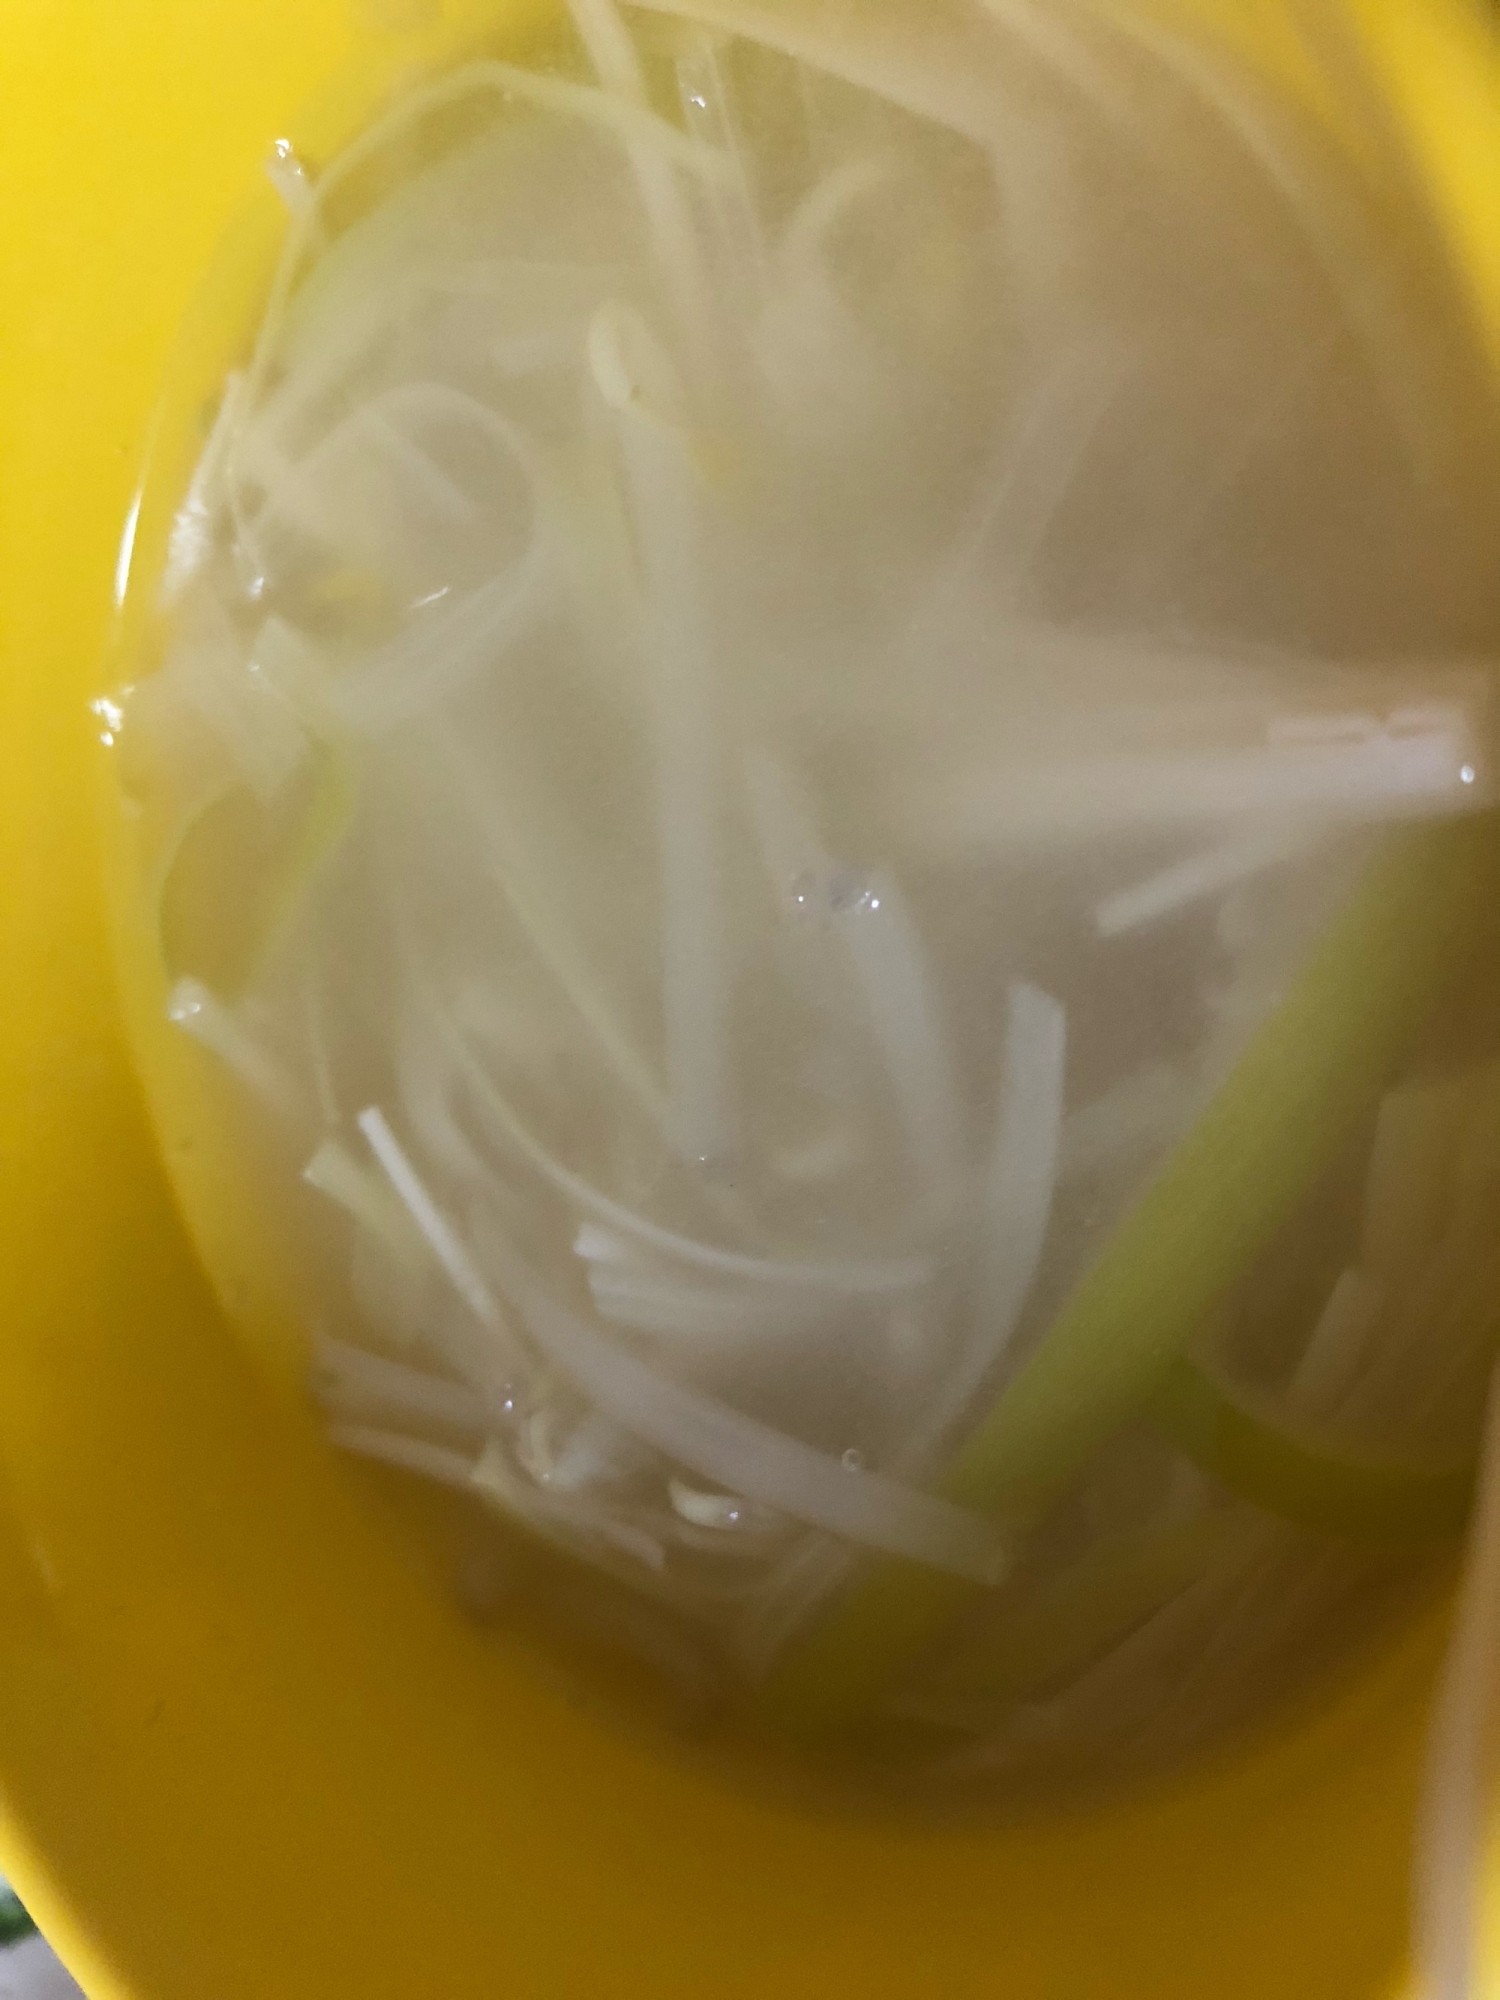 ★簡単★白髪葱たっぷりのパイタンスープ